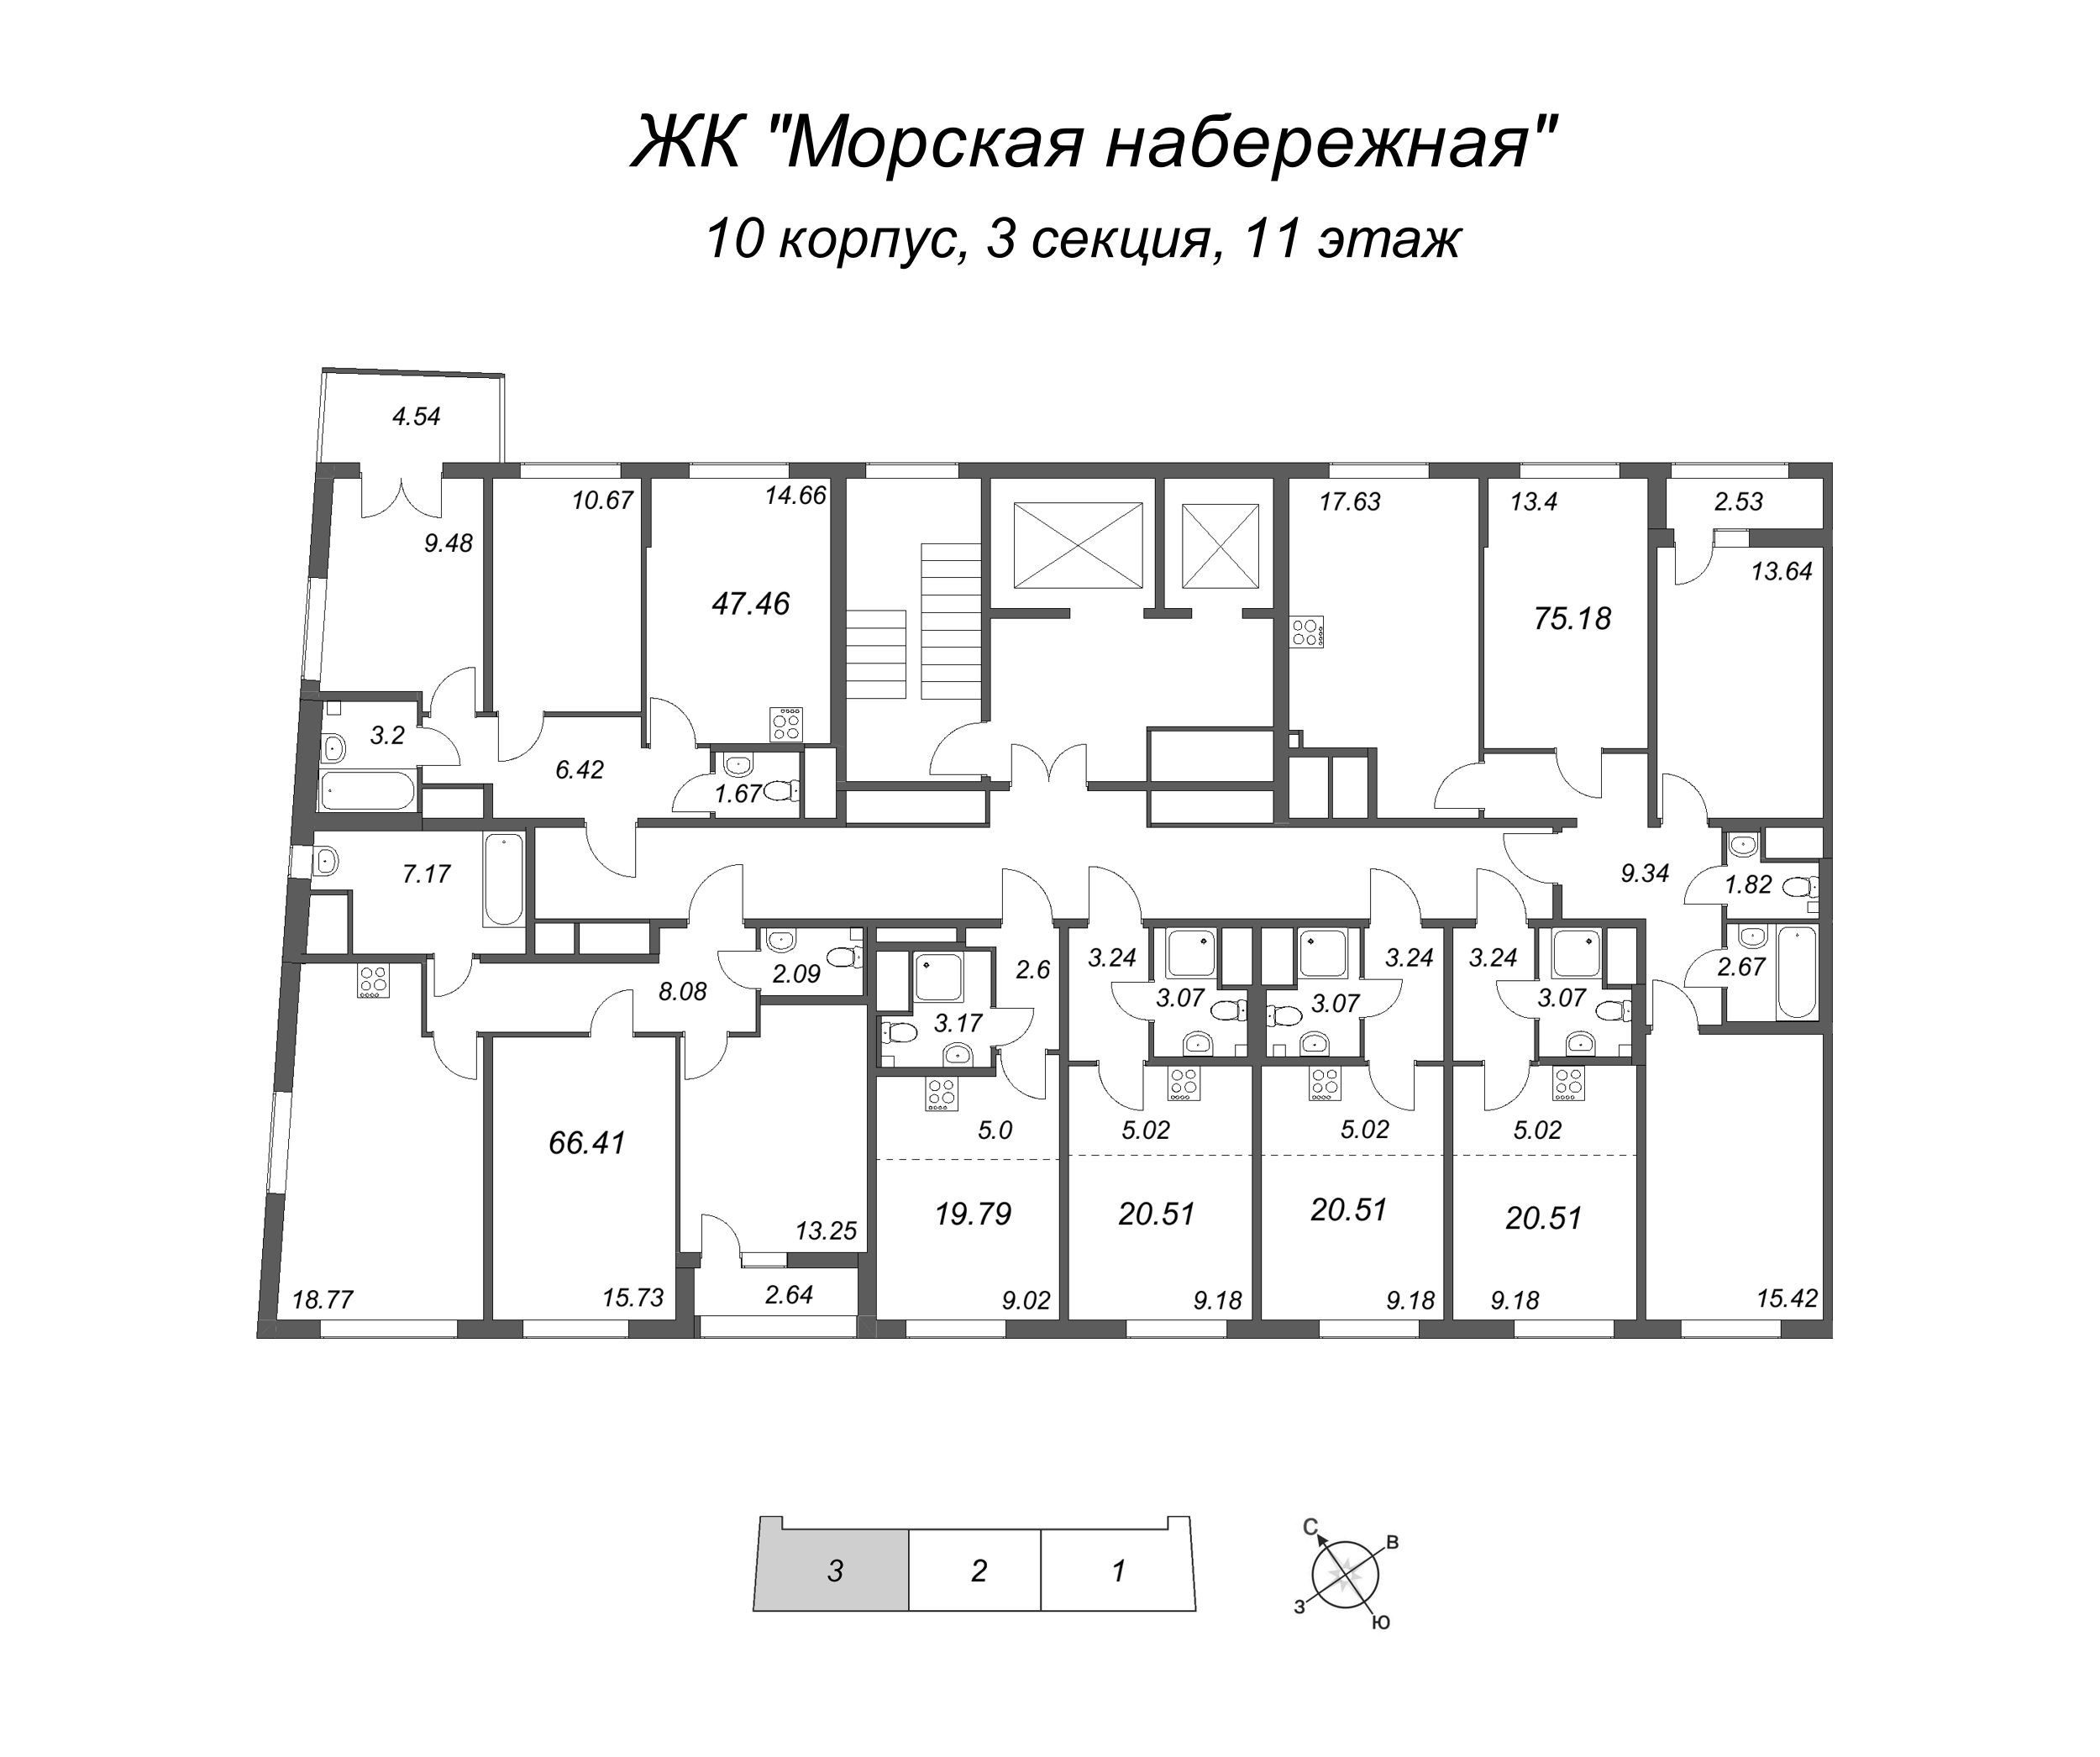 4-комнатная (Евро) квартира, 75.18 м² в ЖК "Морская набережная" - планировка этажа